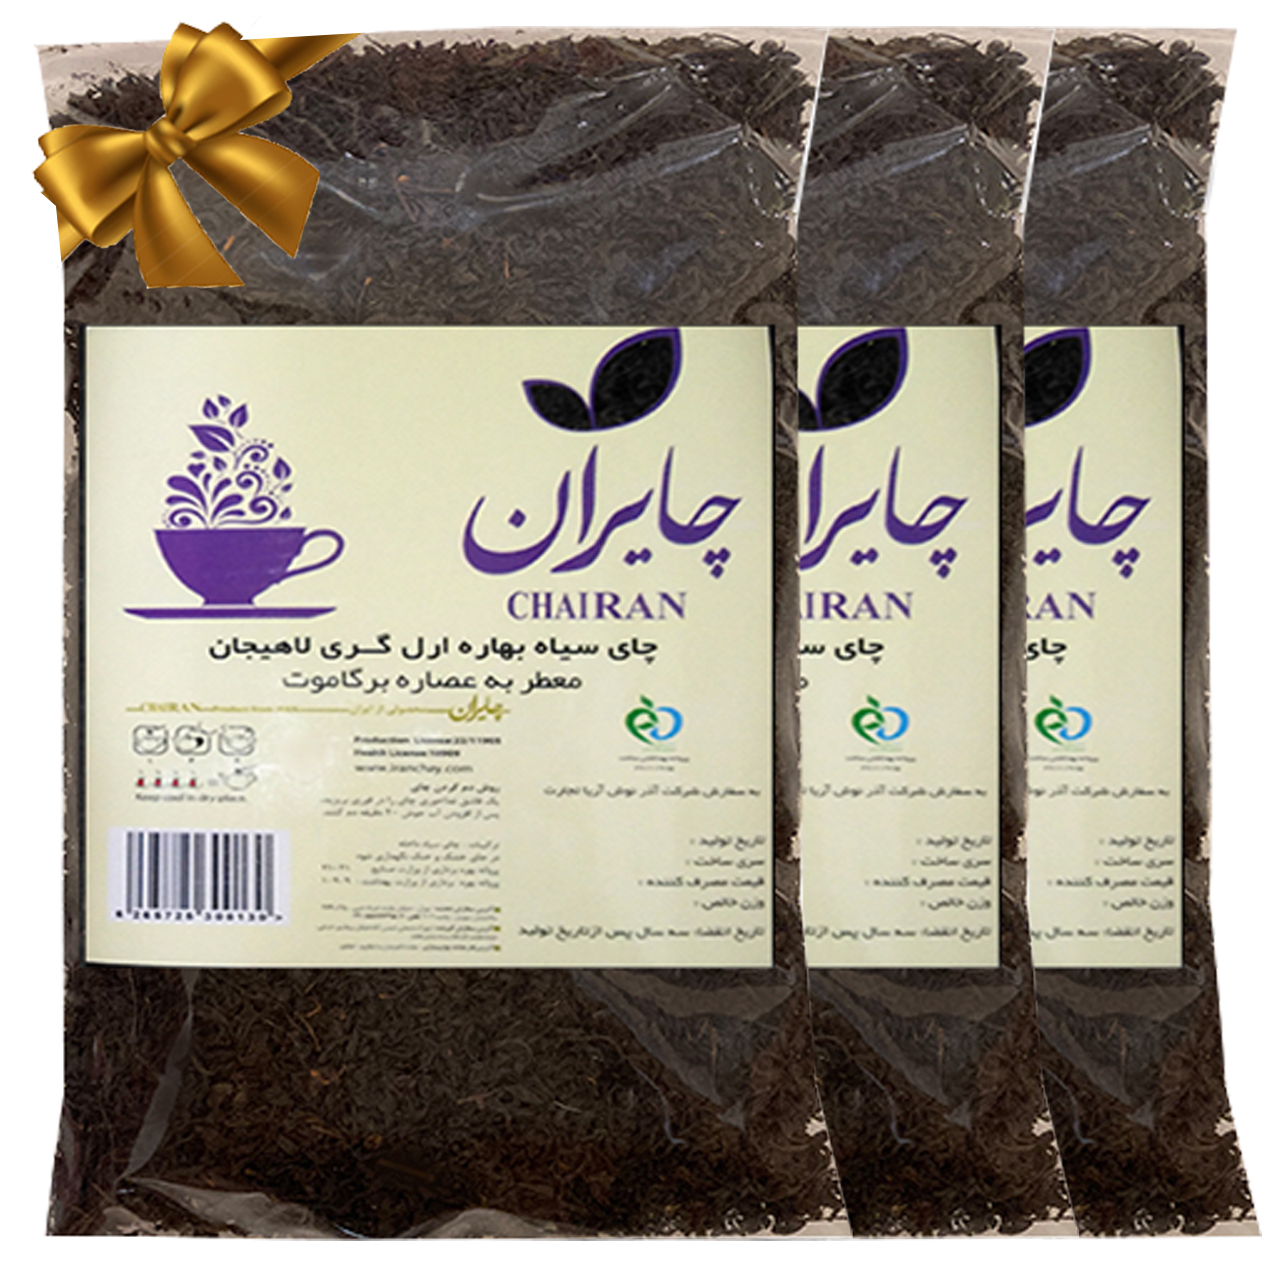 چای ایرانی سیاه شکسته معطر به عصاره برگاموت - 1200گرم بسته 3 عددی